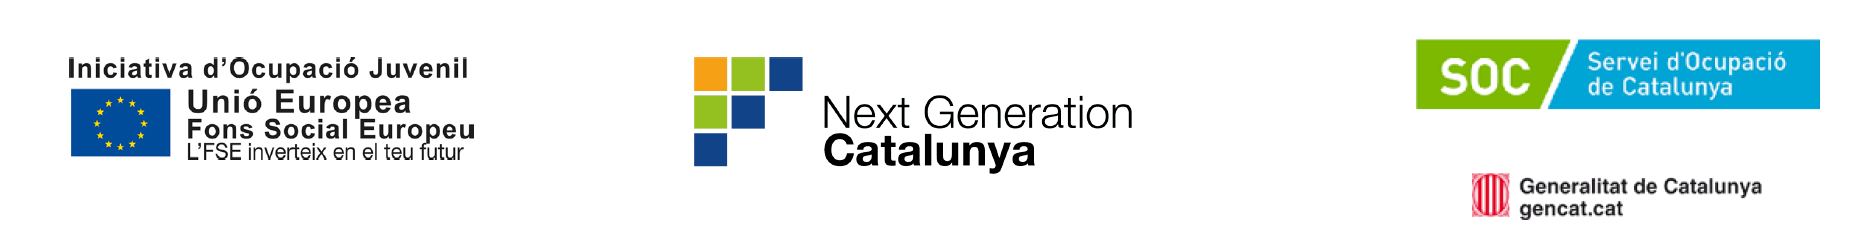 Inciativa d'ocupació juvenil. Next generation Catalunya. Servei Ocupació Catalunya.